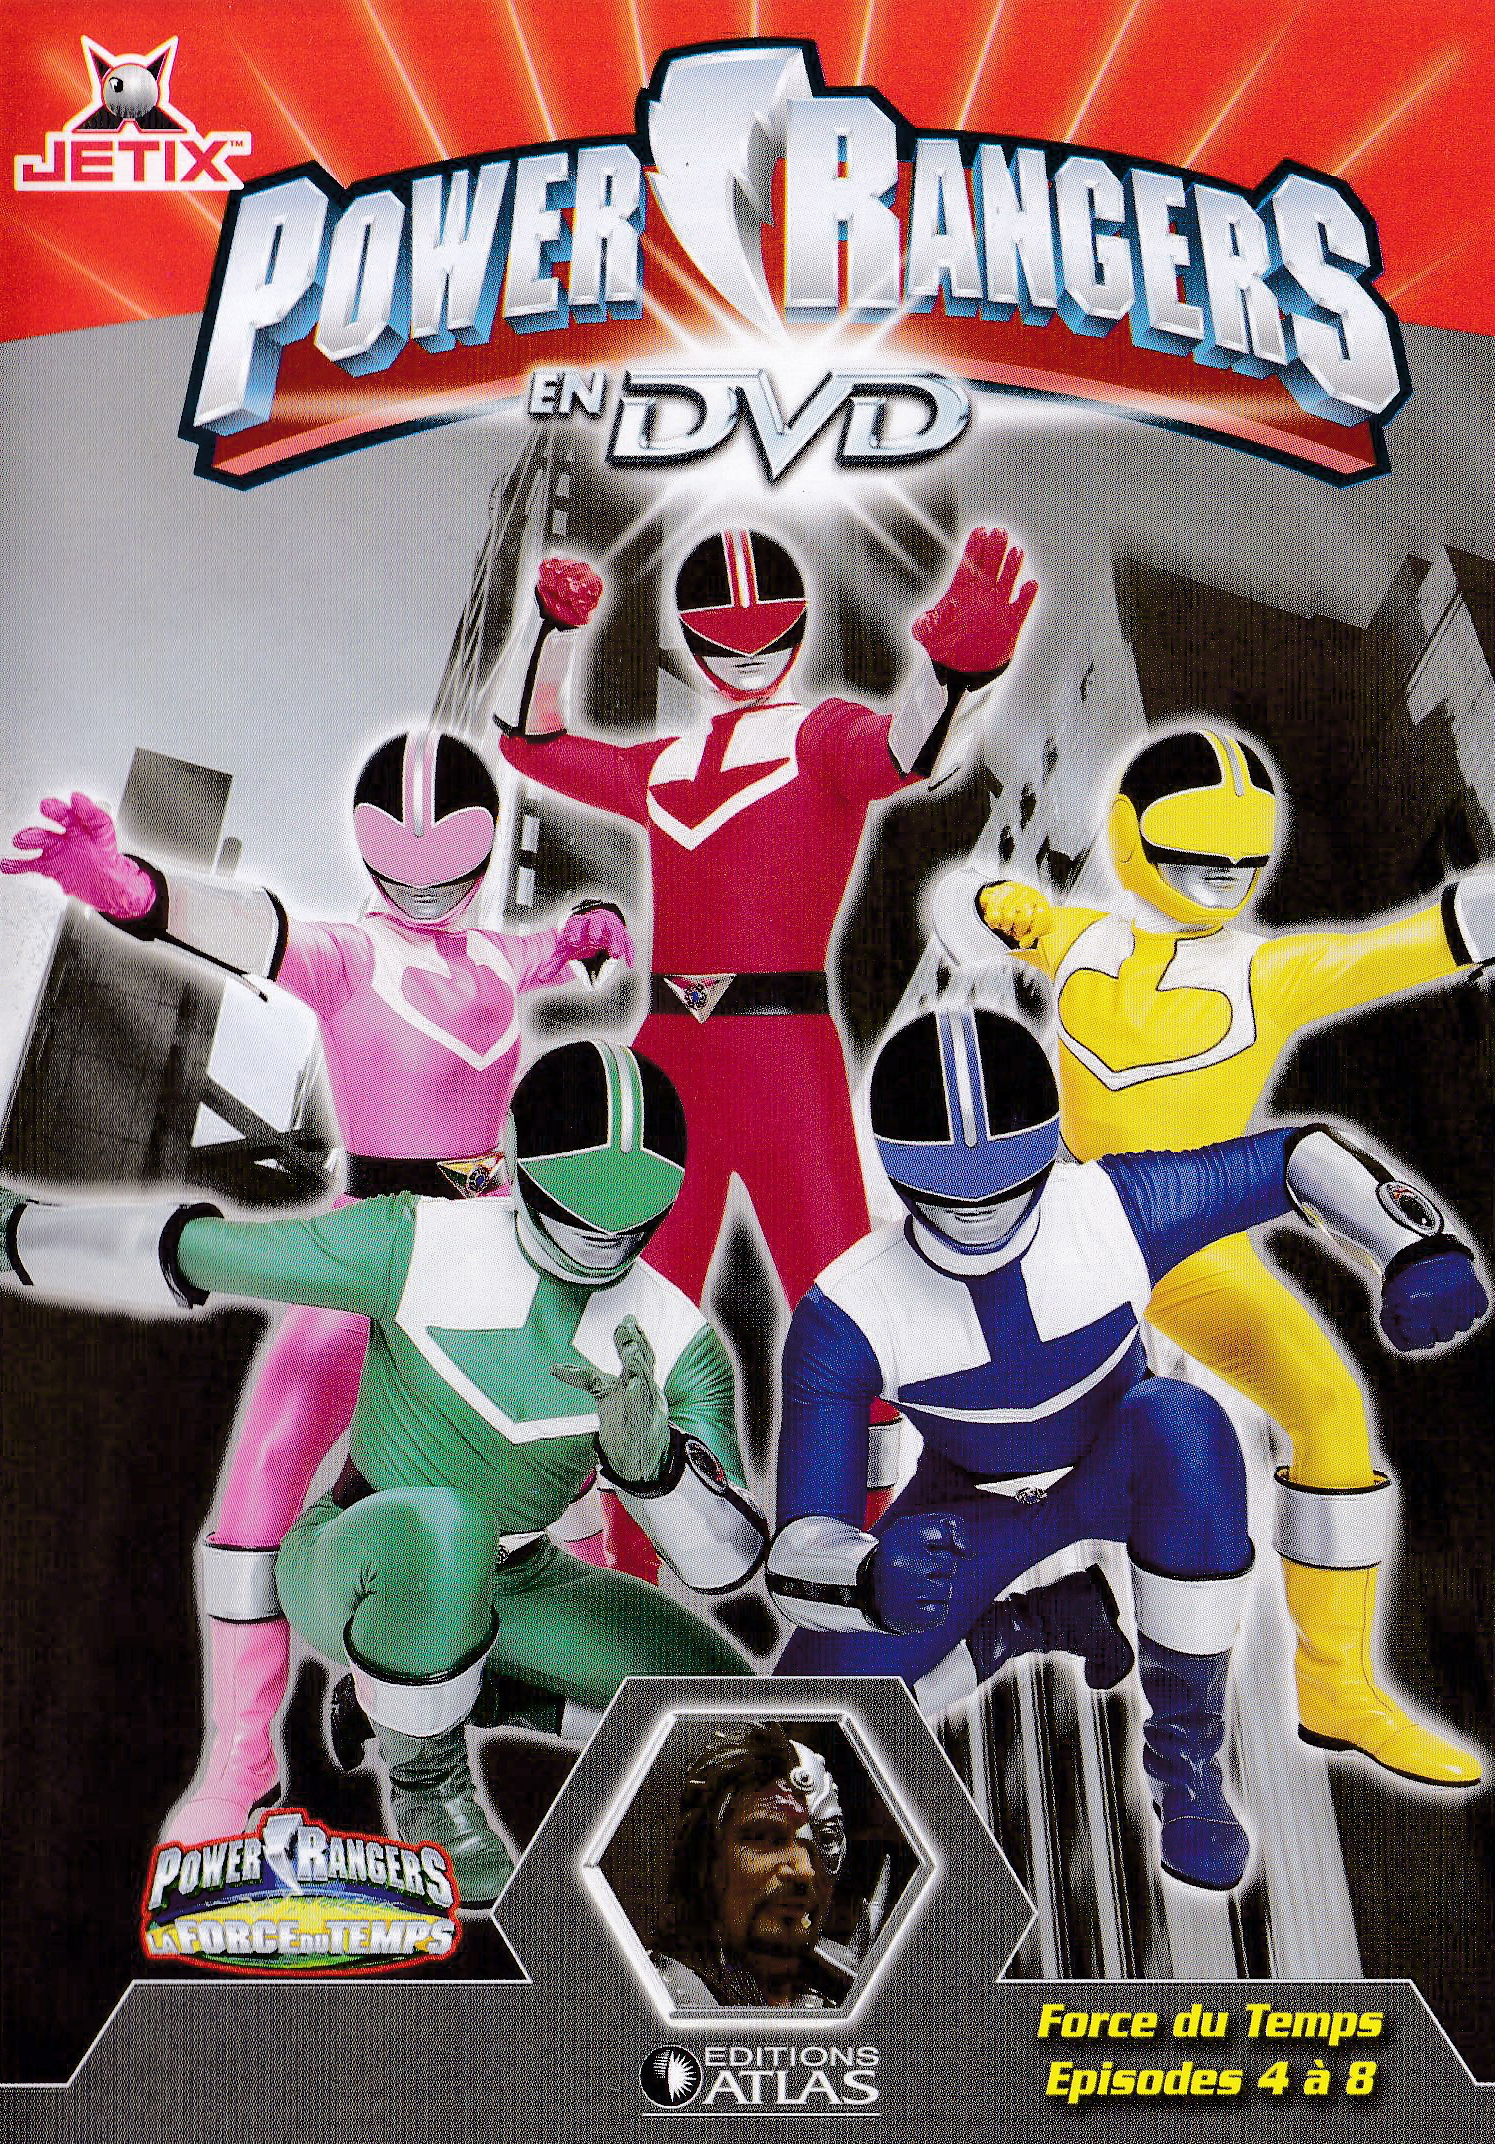 Power Rangers en DVD n°44